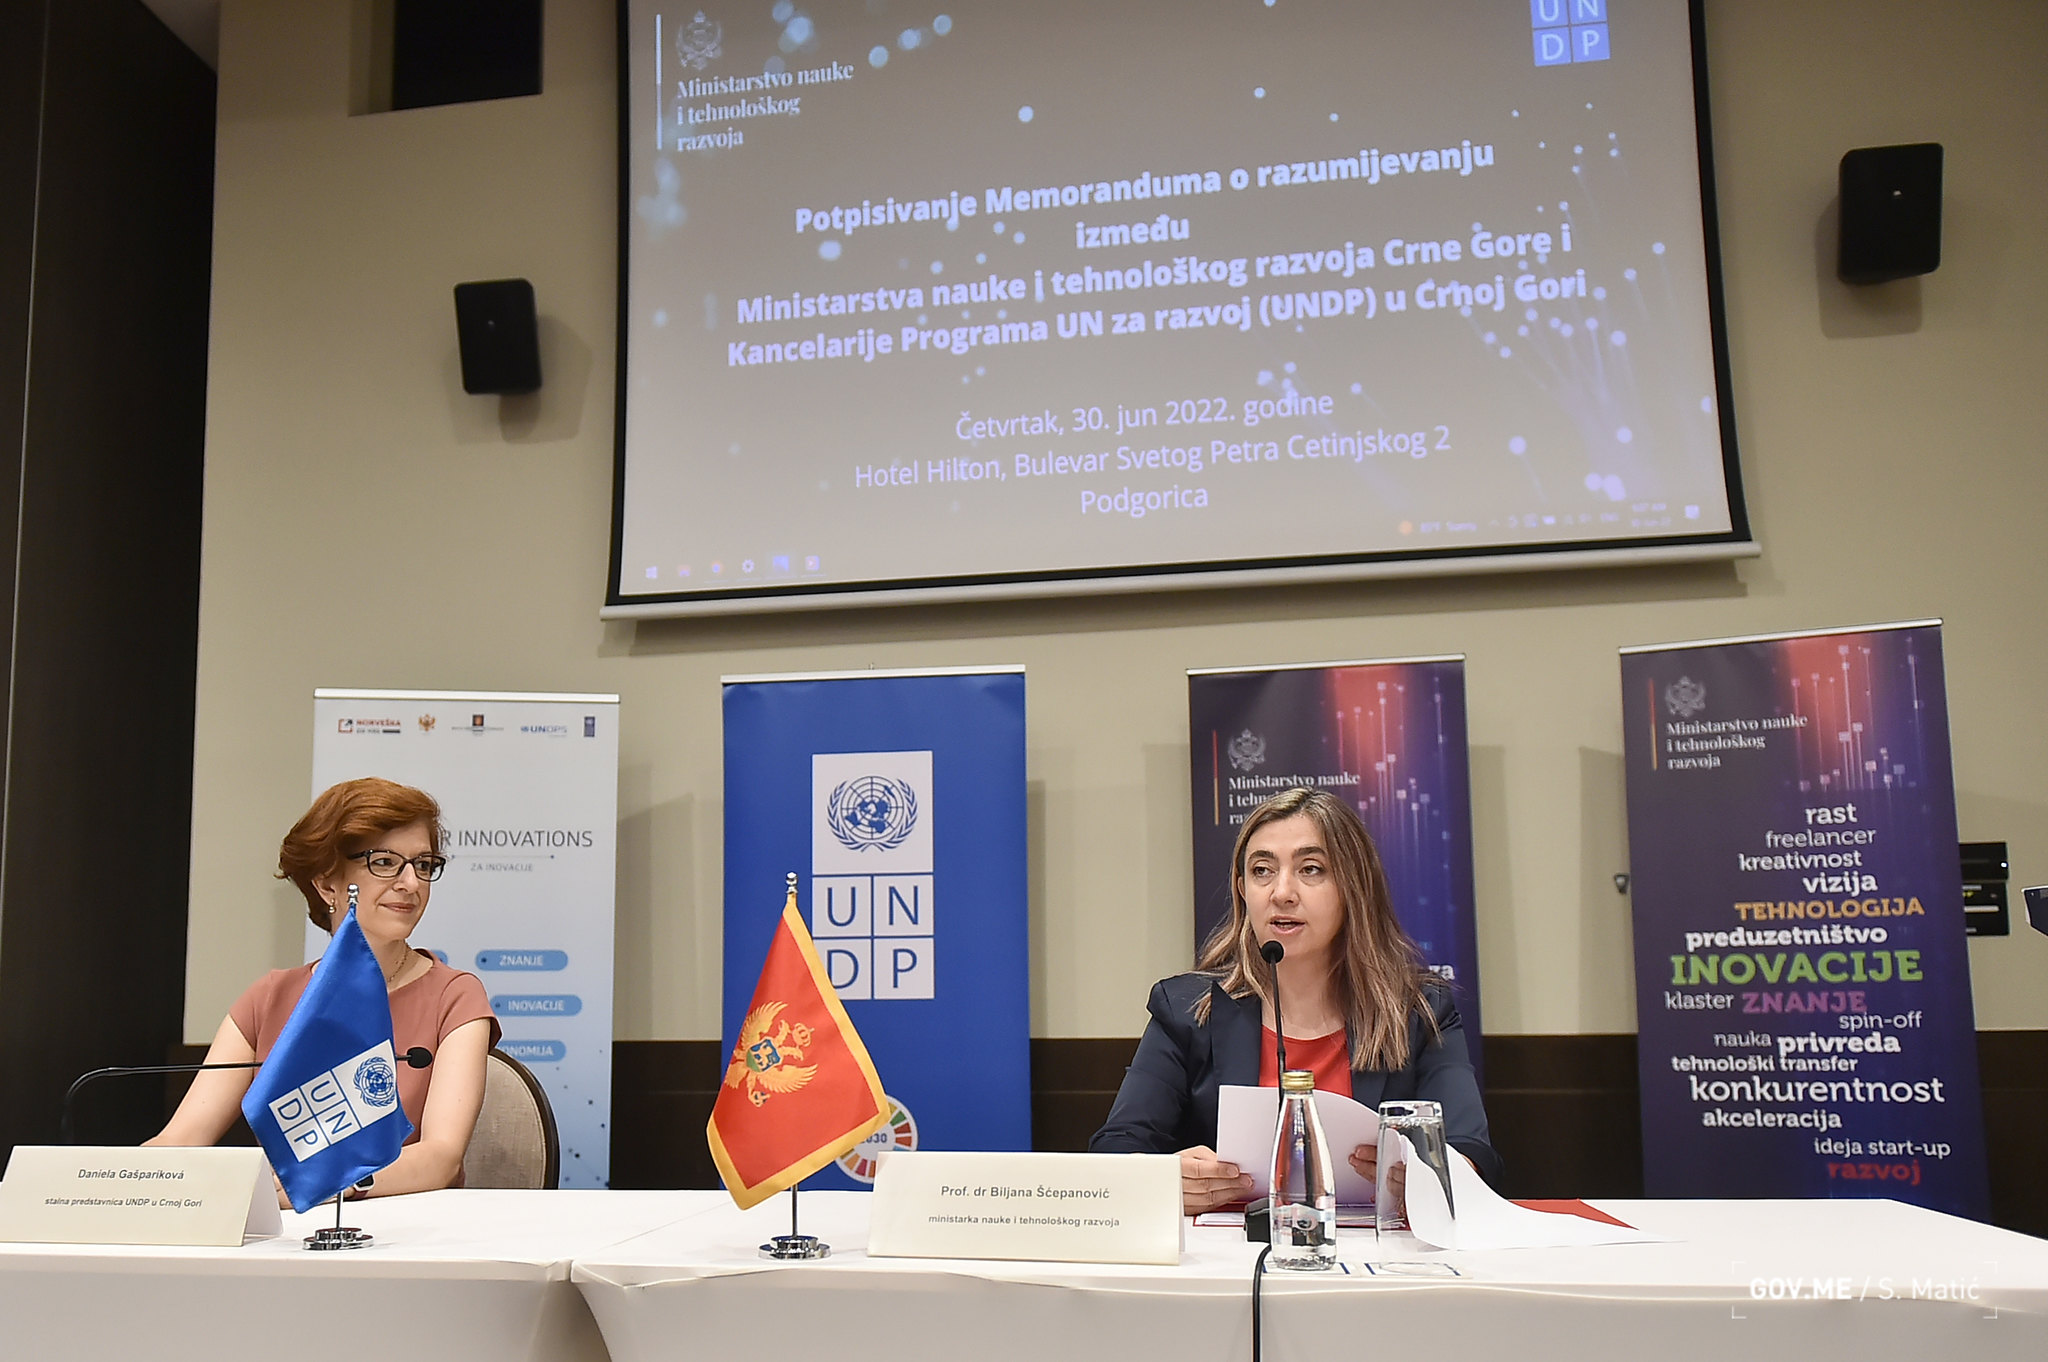 Potpisivanje Memoranduma između Ministarstva nauke i tehnološkog razvoja i Kancelarije Programa UN za razvoj u Crnoj Gori